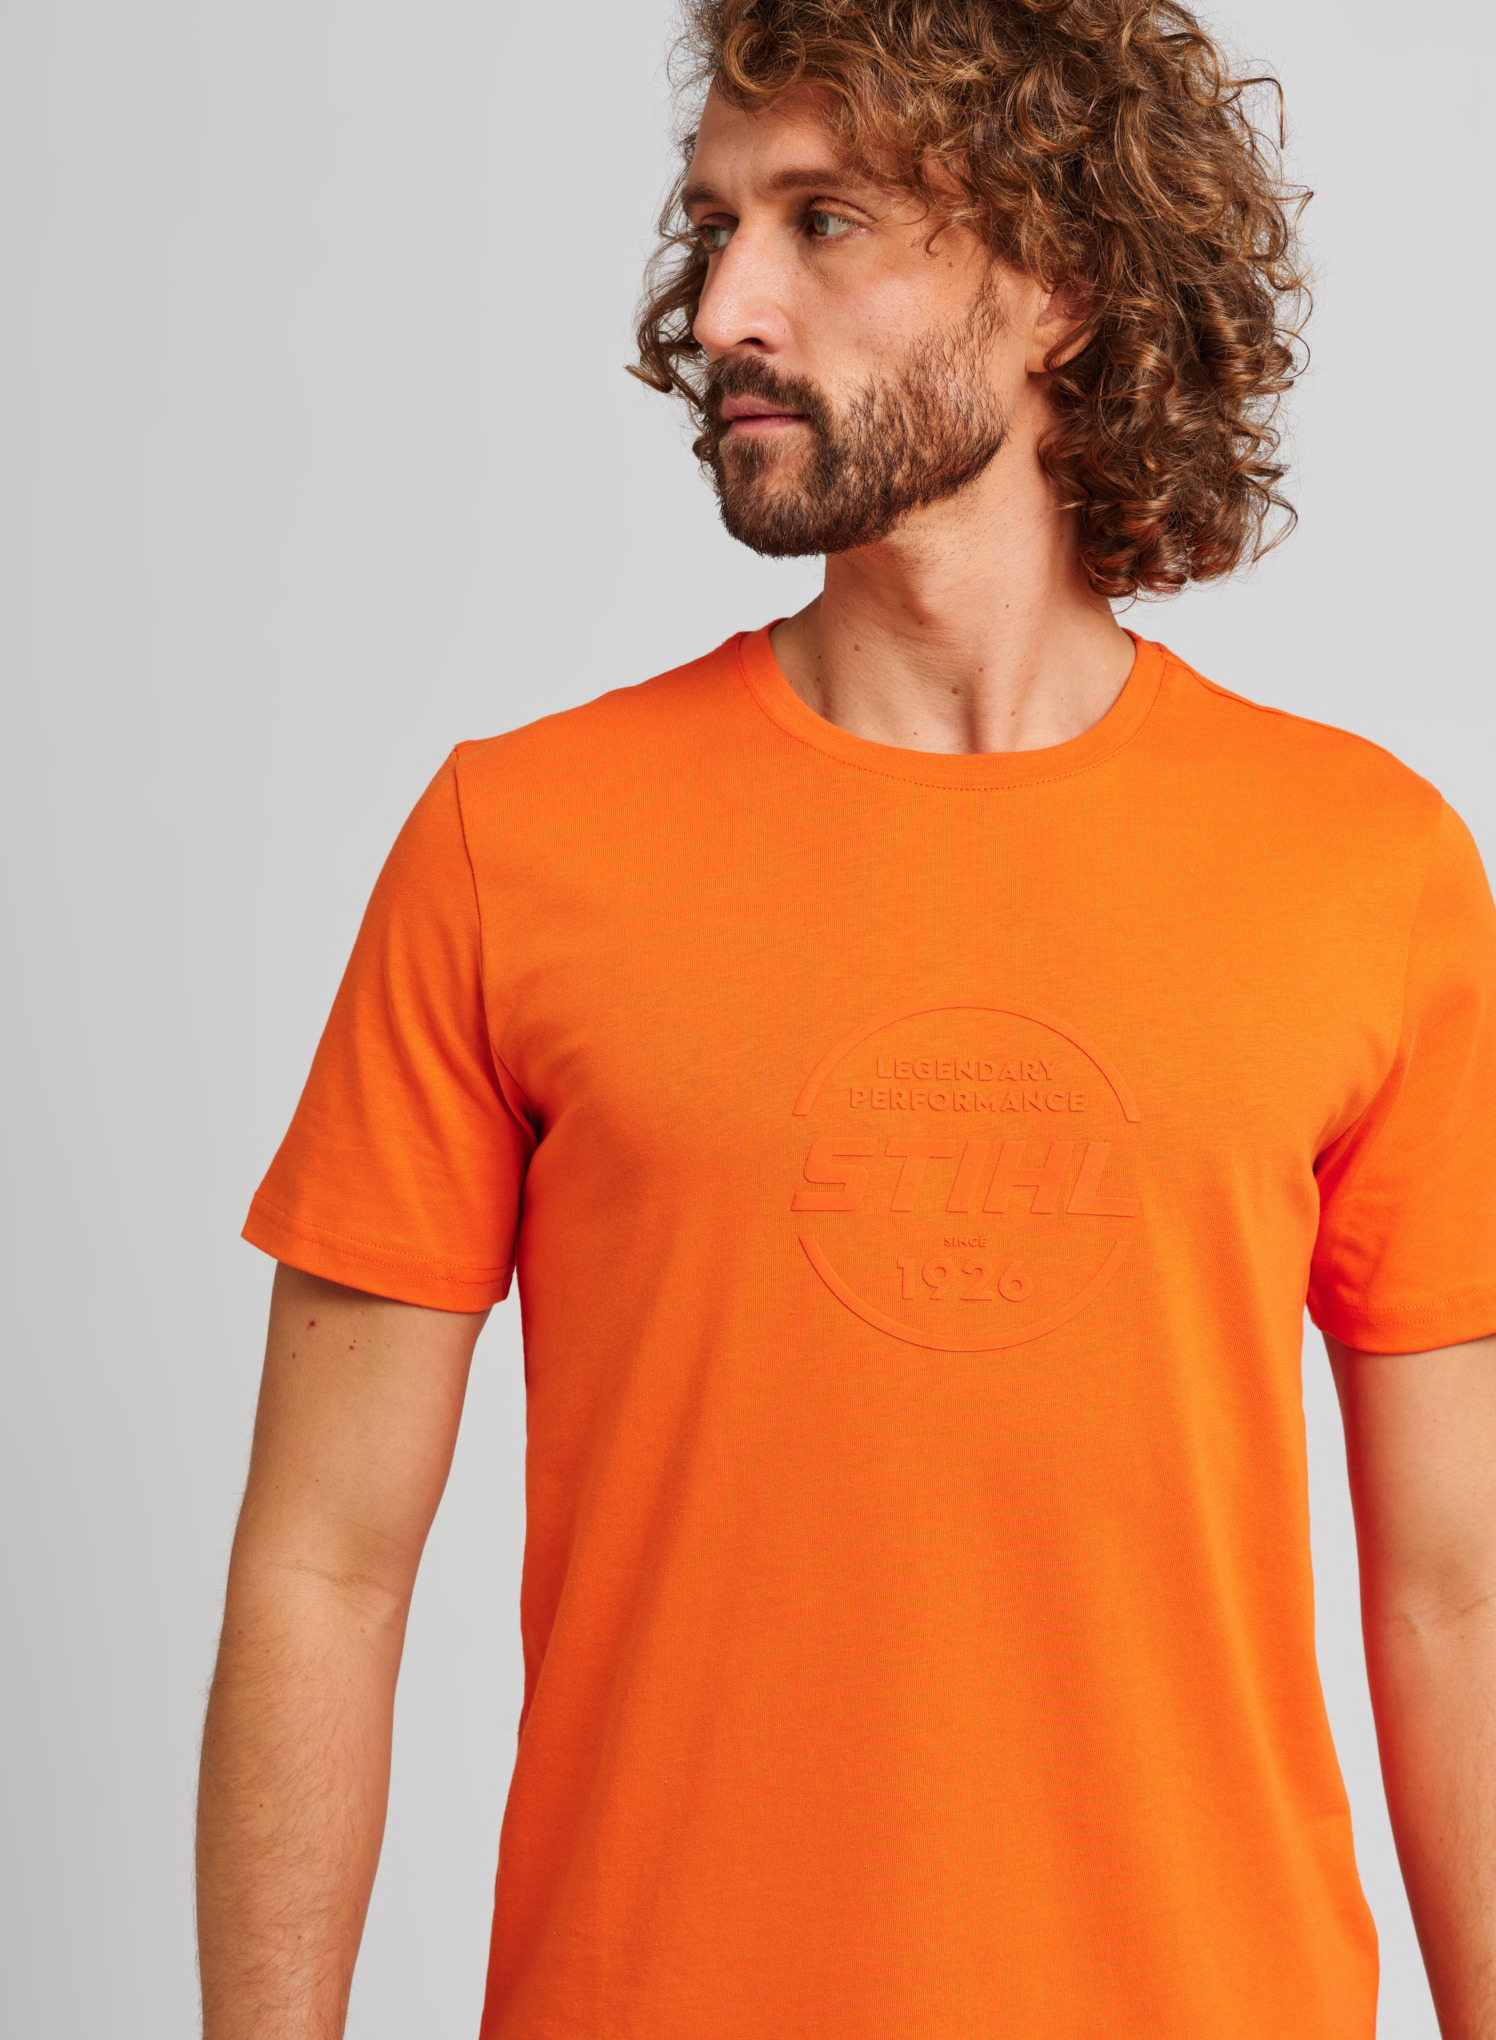 T-Shirt LOGO-CIRCLE orange